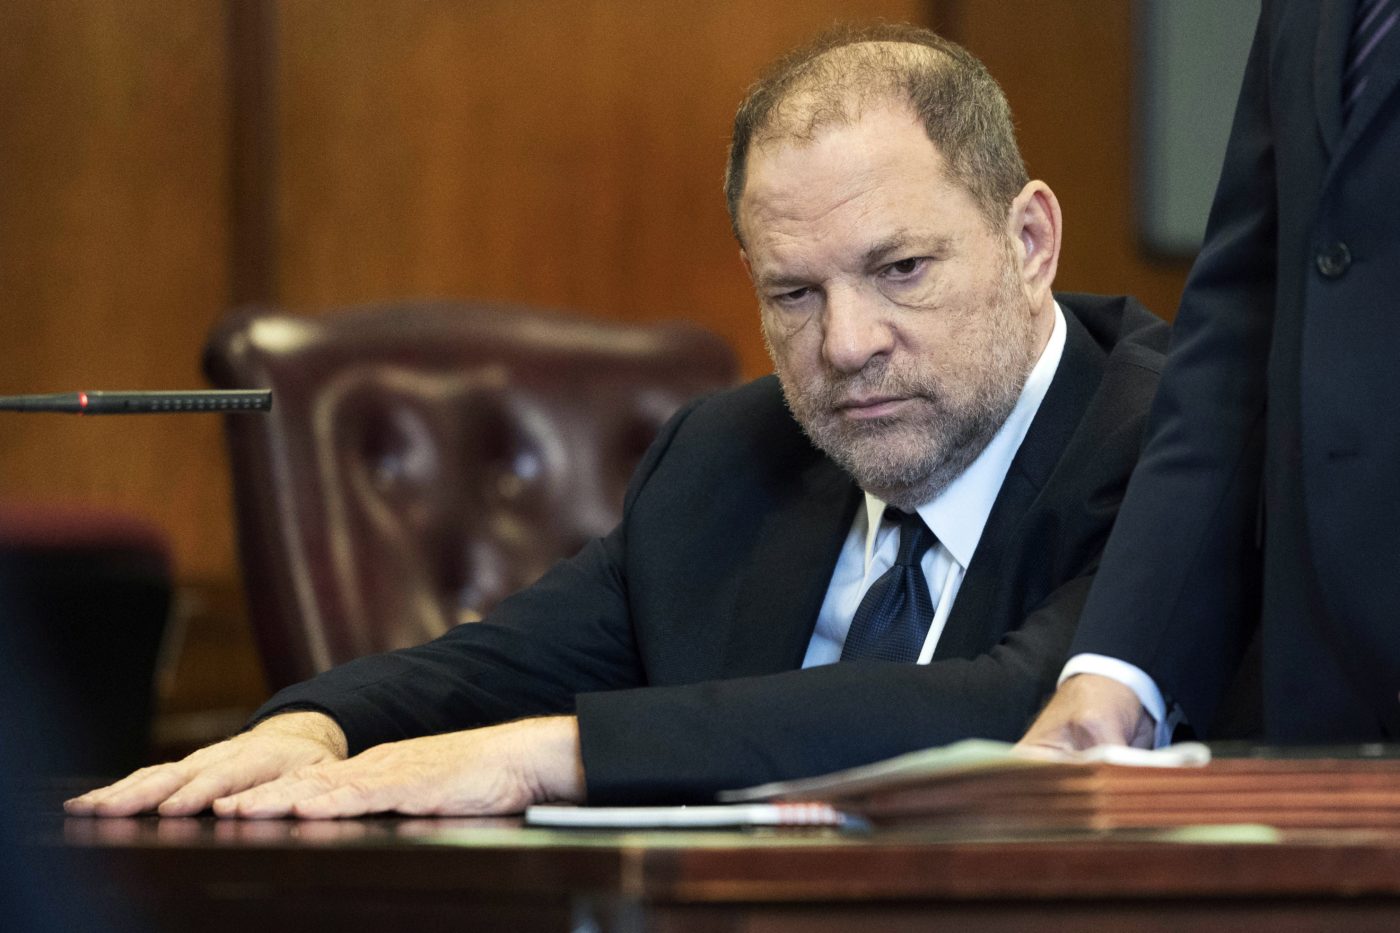 Elhalasztották Harvey Weinstein bírósági tárgyalását